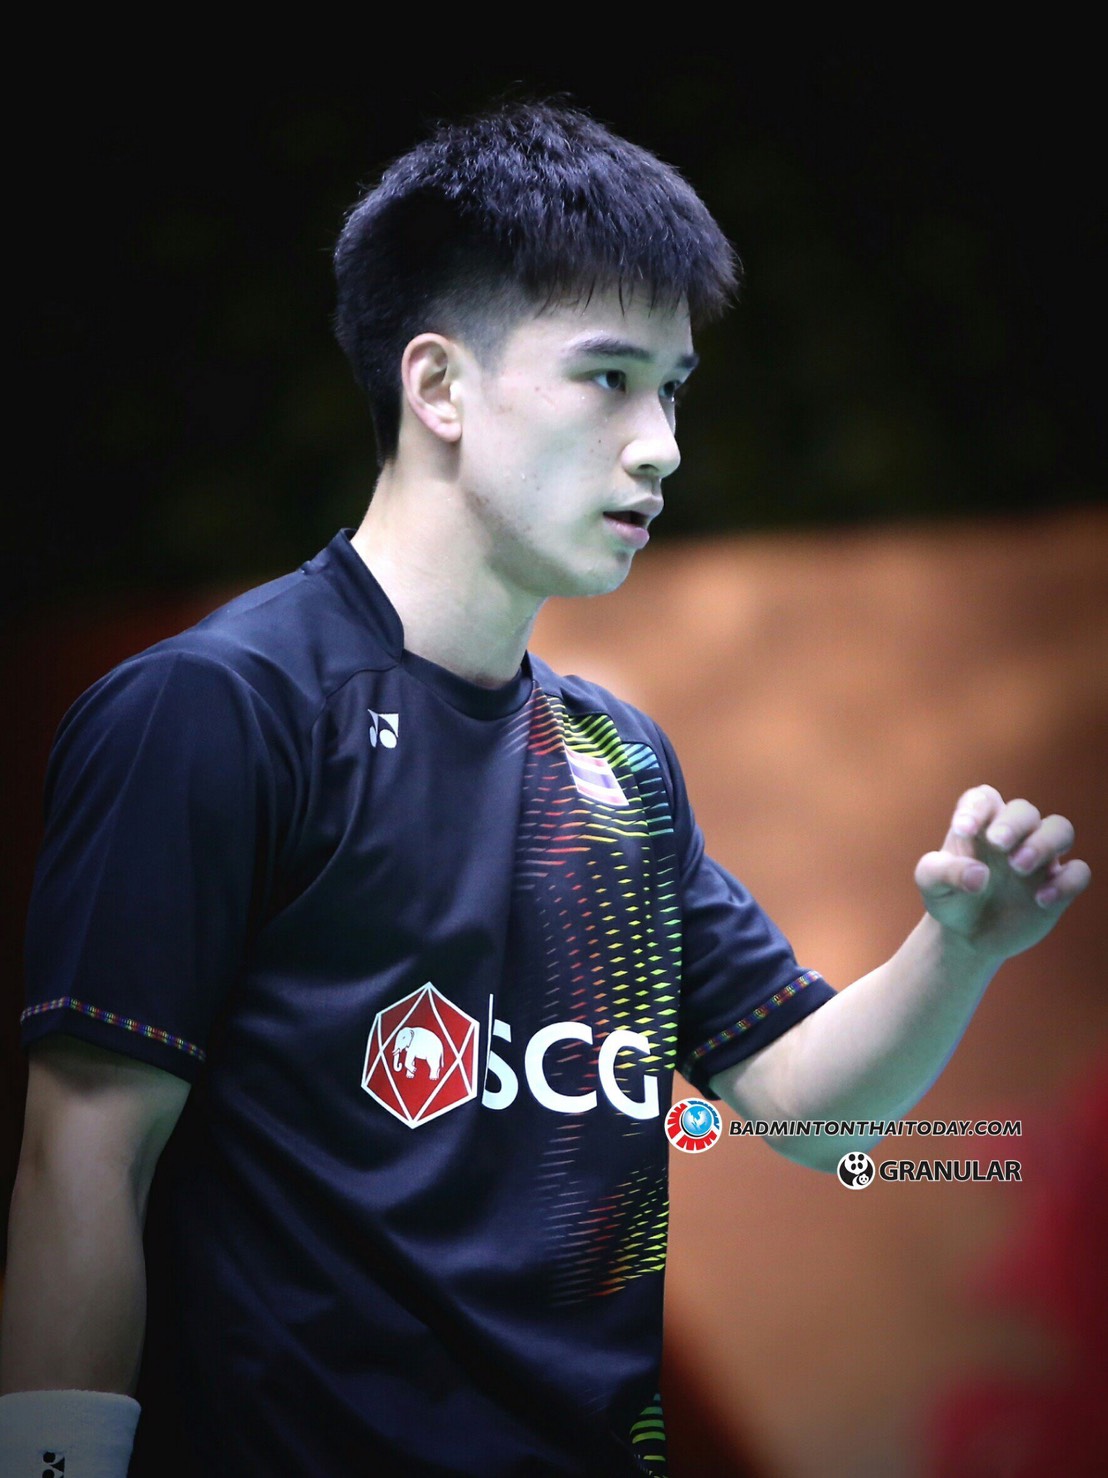 กันต์ แพ้ หนุ่มจีน 2:0 เกมส์ ตกรอบสองของการแข่งขัน China Master 2017